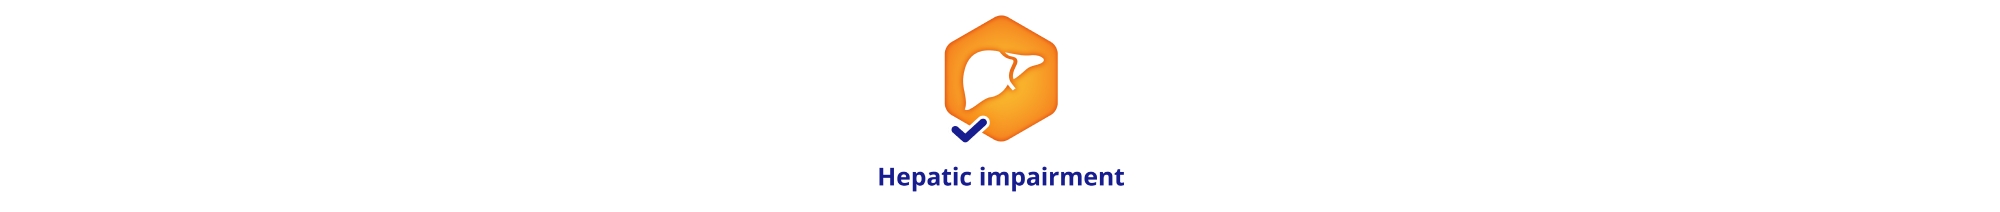 Hepatic impairment